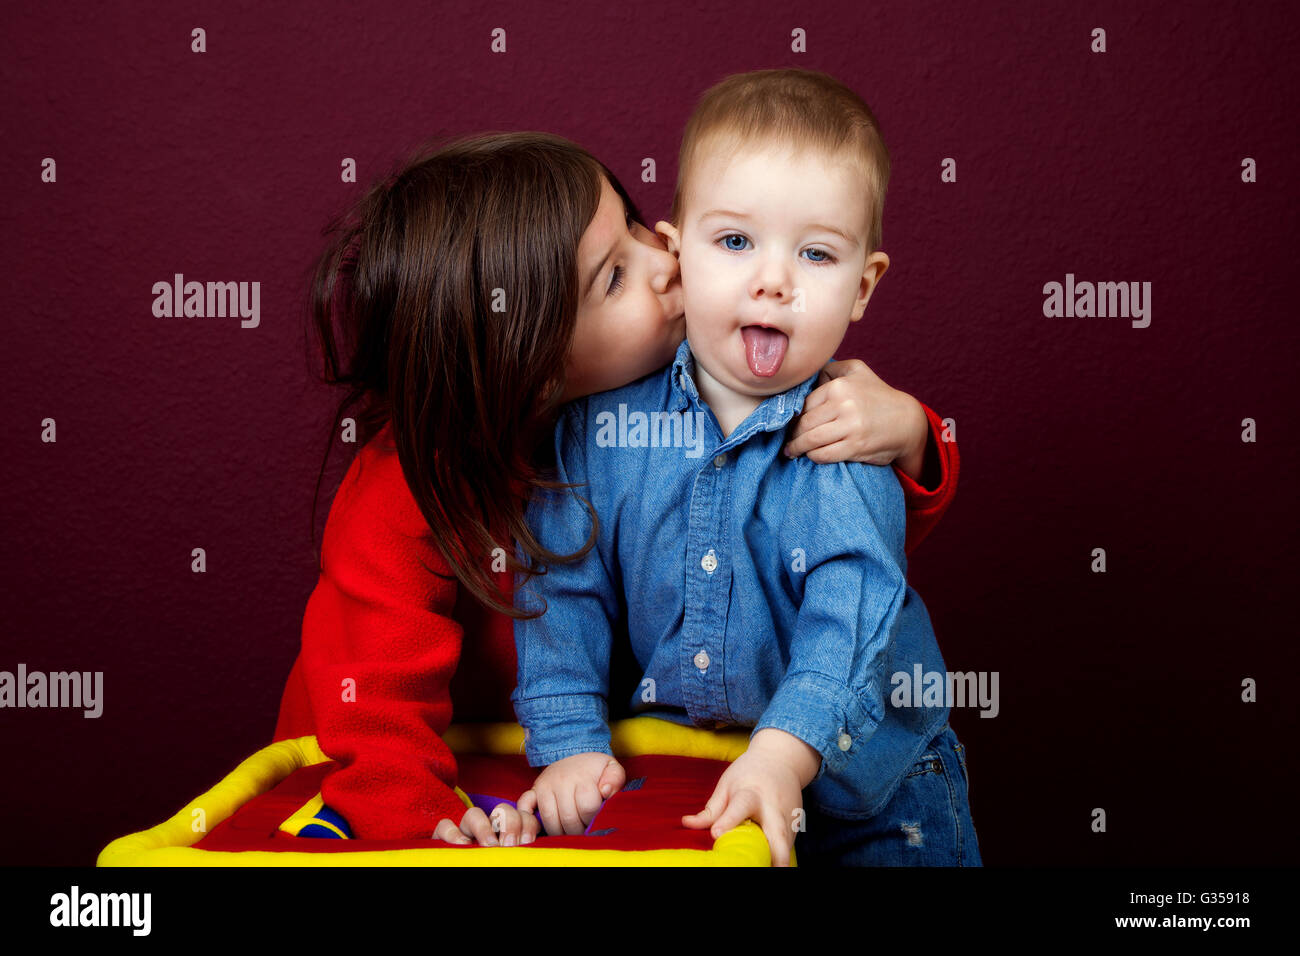 Una niña tira su hermano cercano a besarlo en la mejilla. Él está babeando con su lengua colgando. Foto de stock